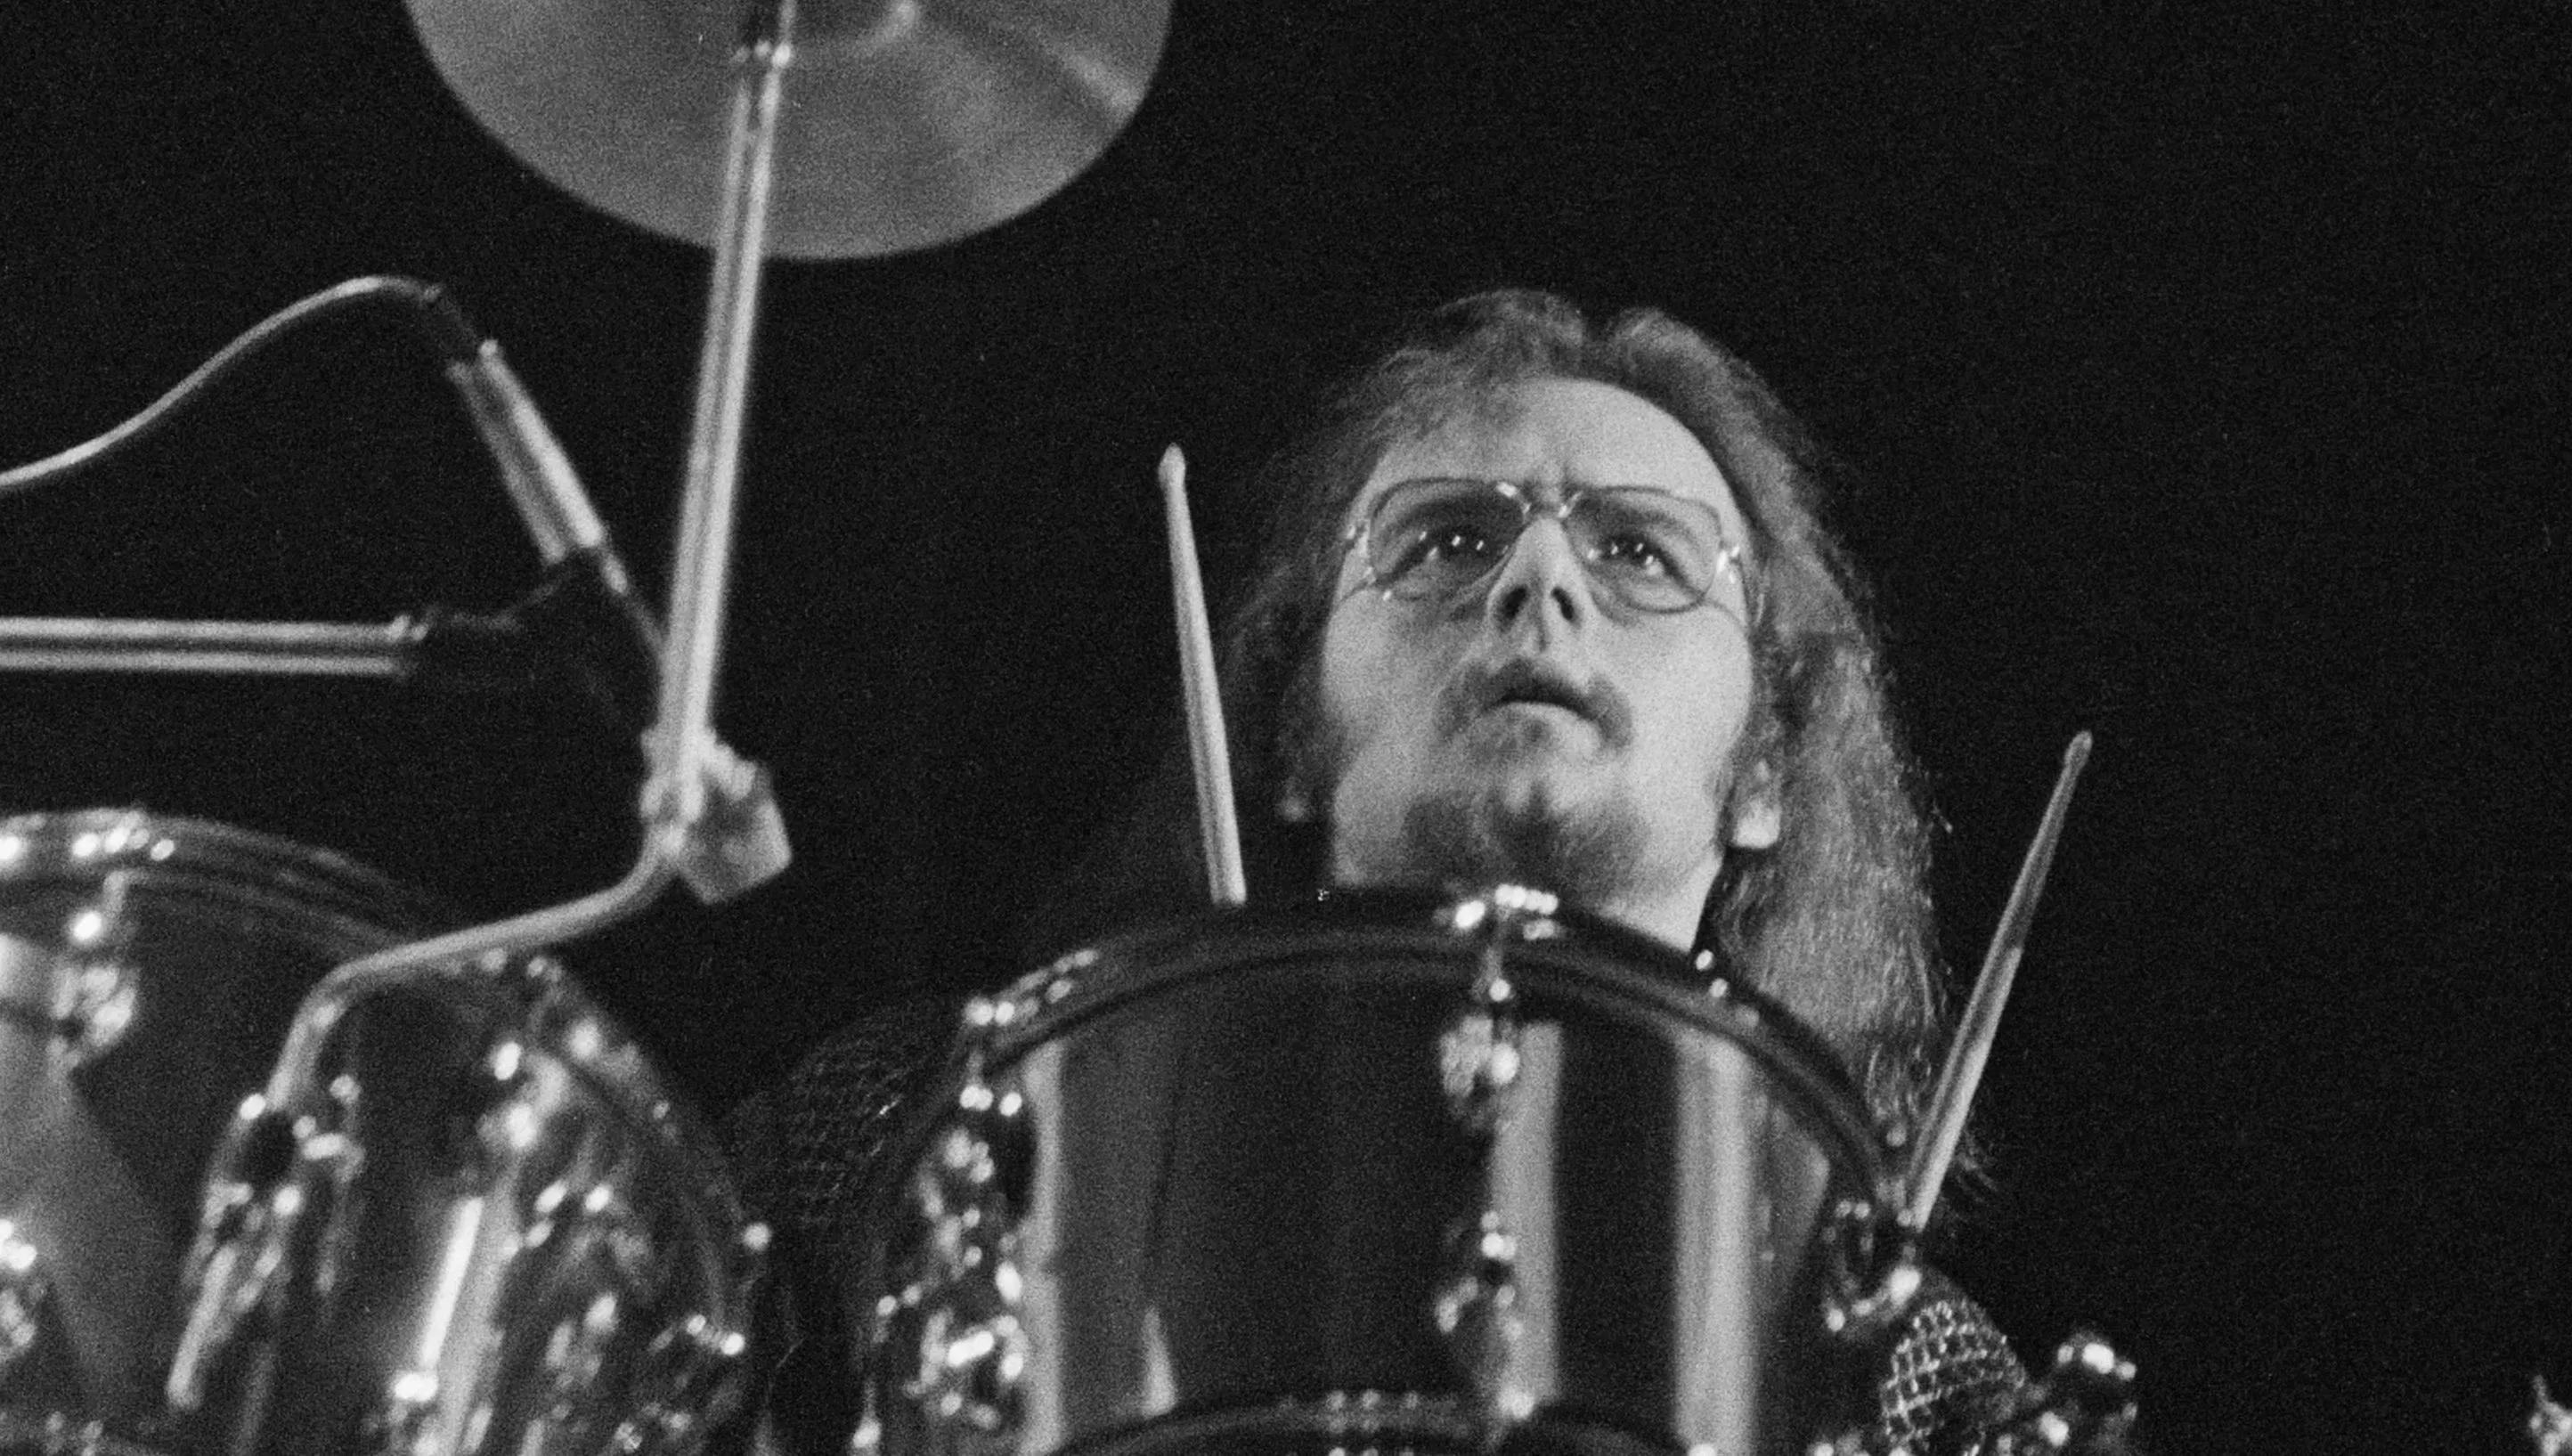 

	
		John Hartman, batería fundador de los Doobie Brothers, fallece a los 72 años
	
	